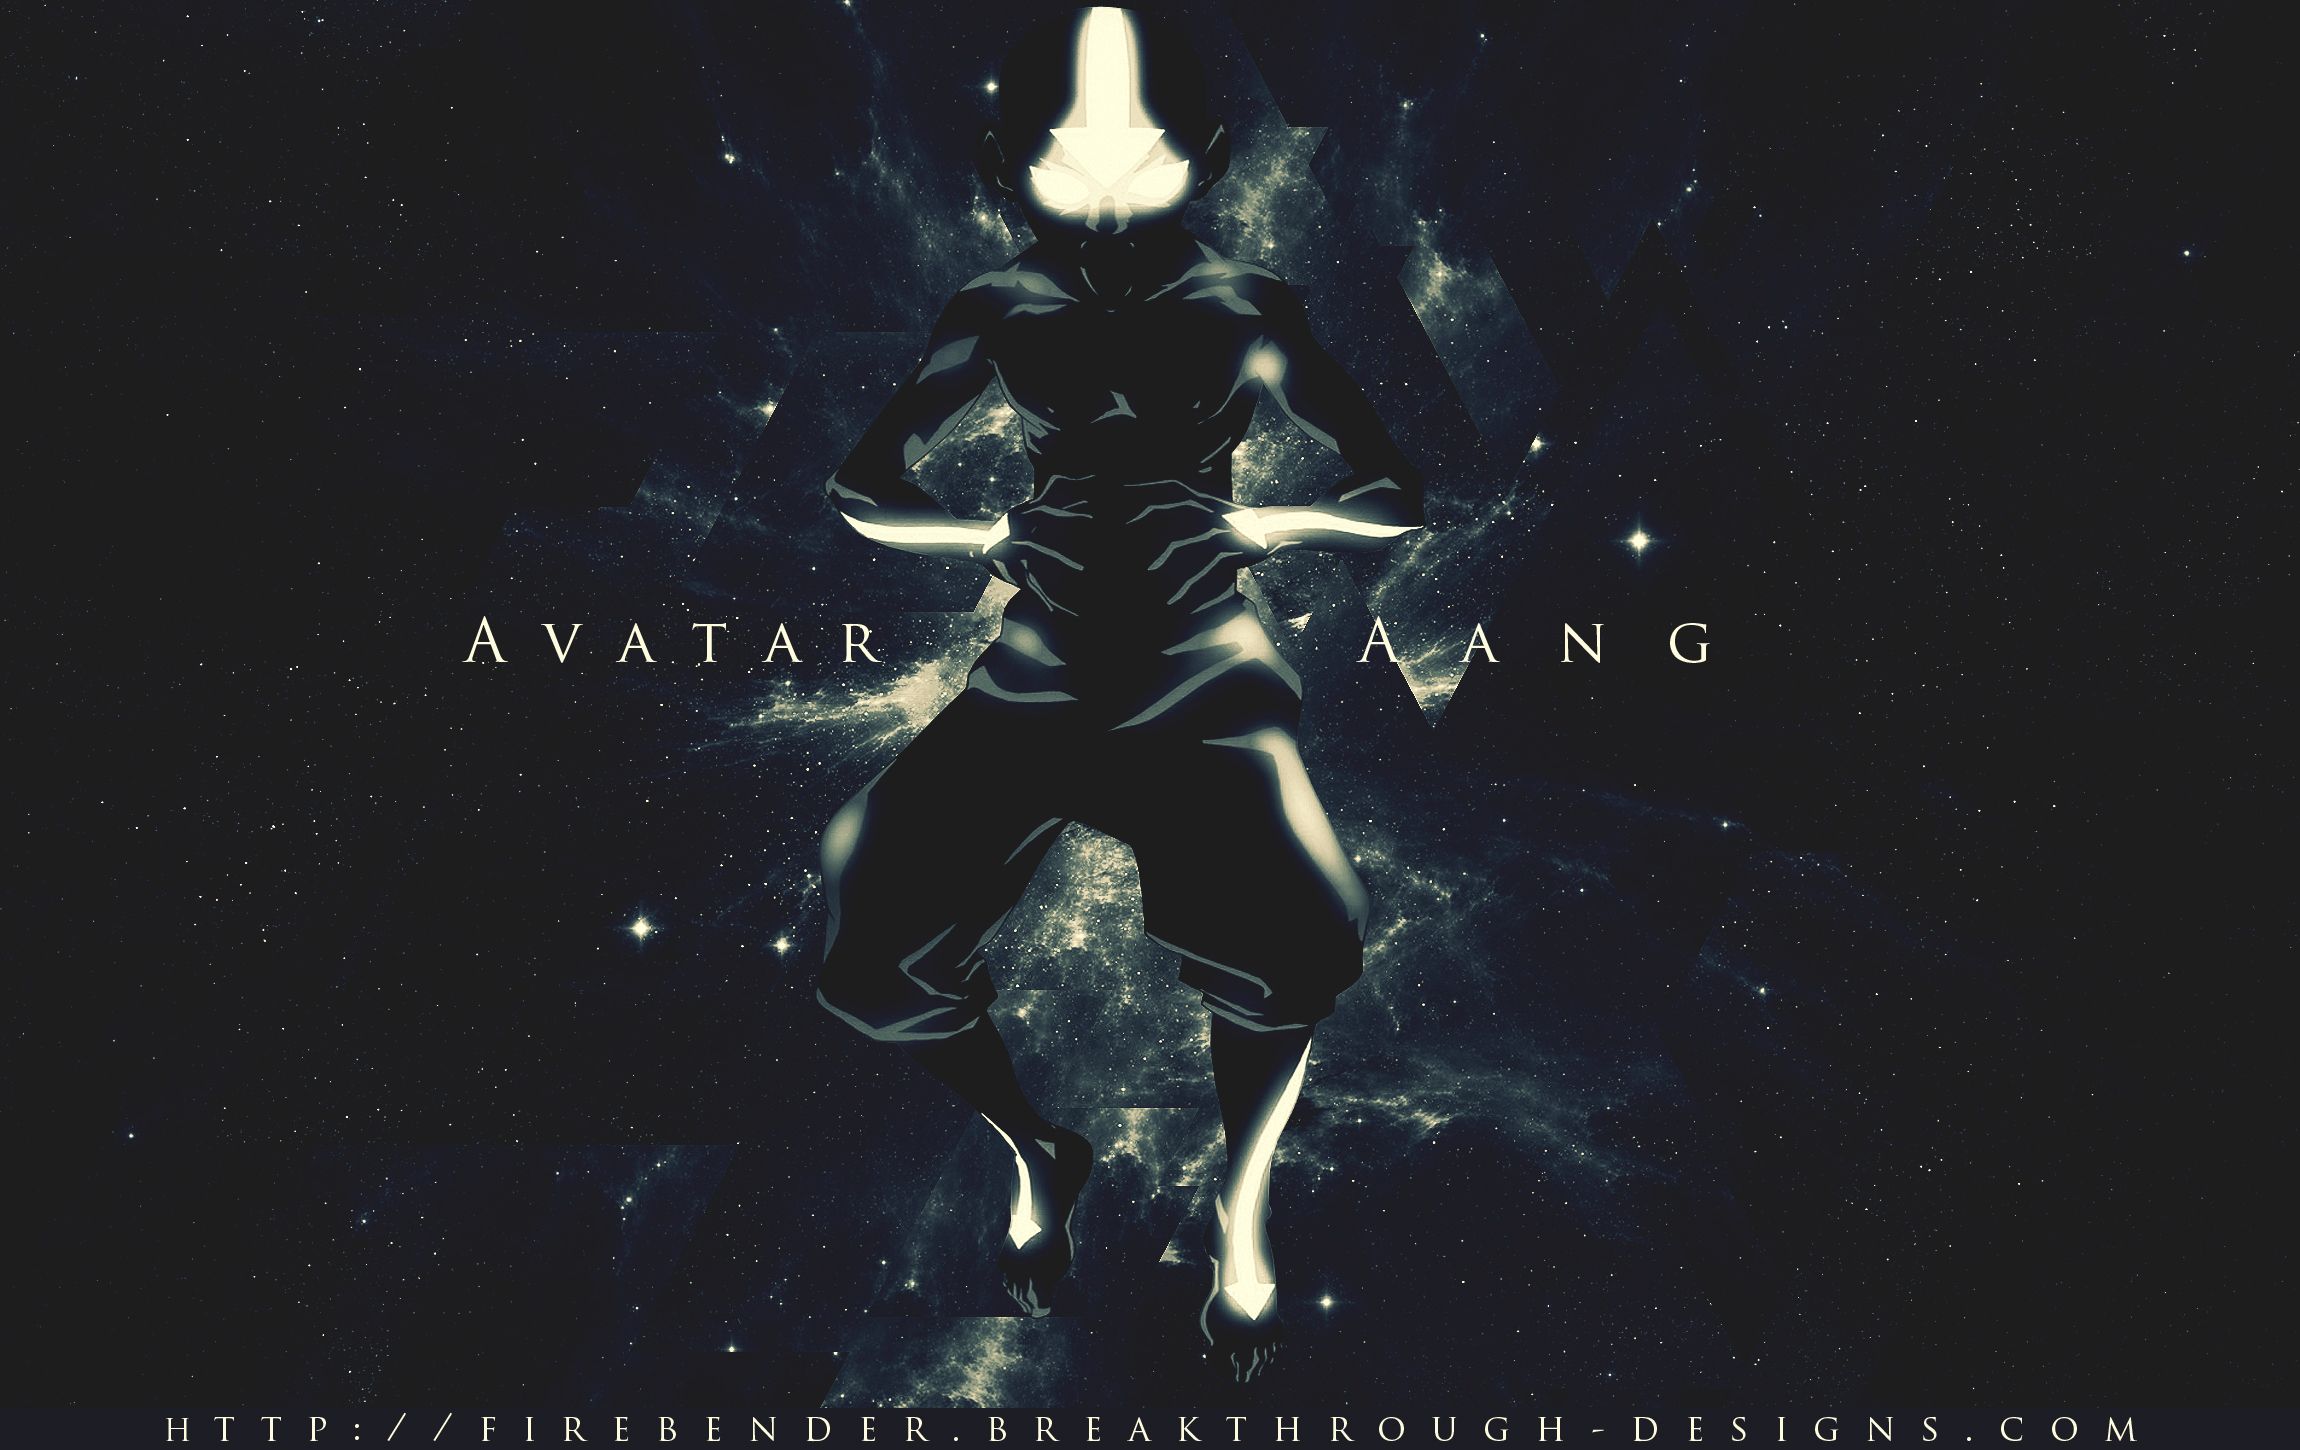 Avatar The Last Airbender Wallpaper | 2300x1450 | ID:27455